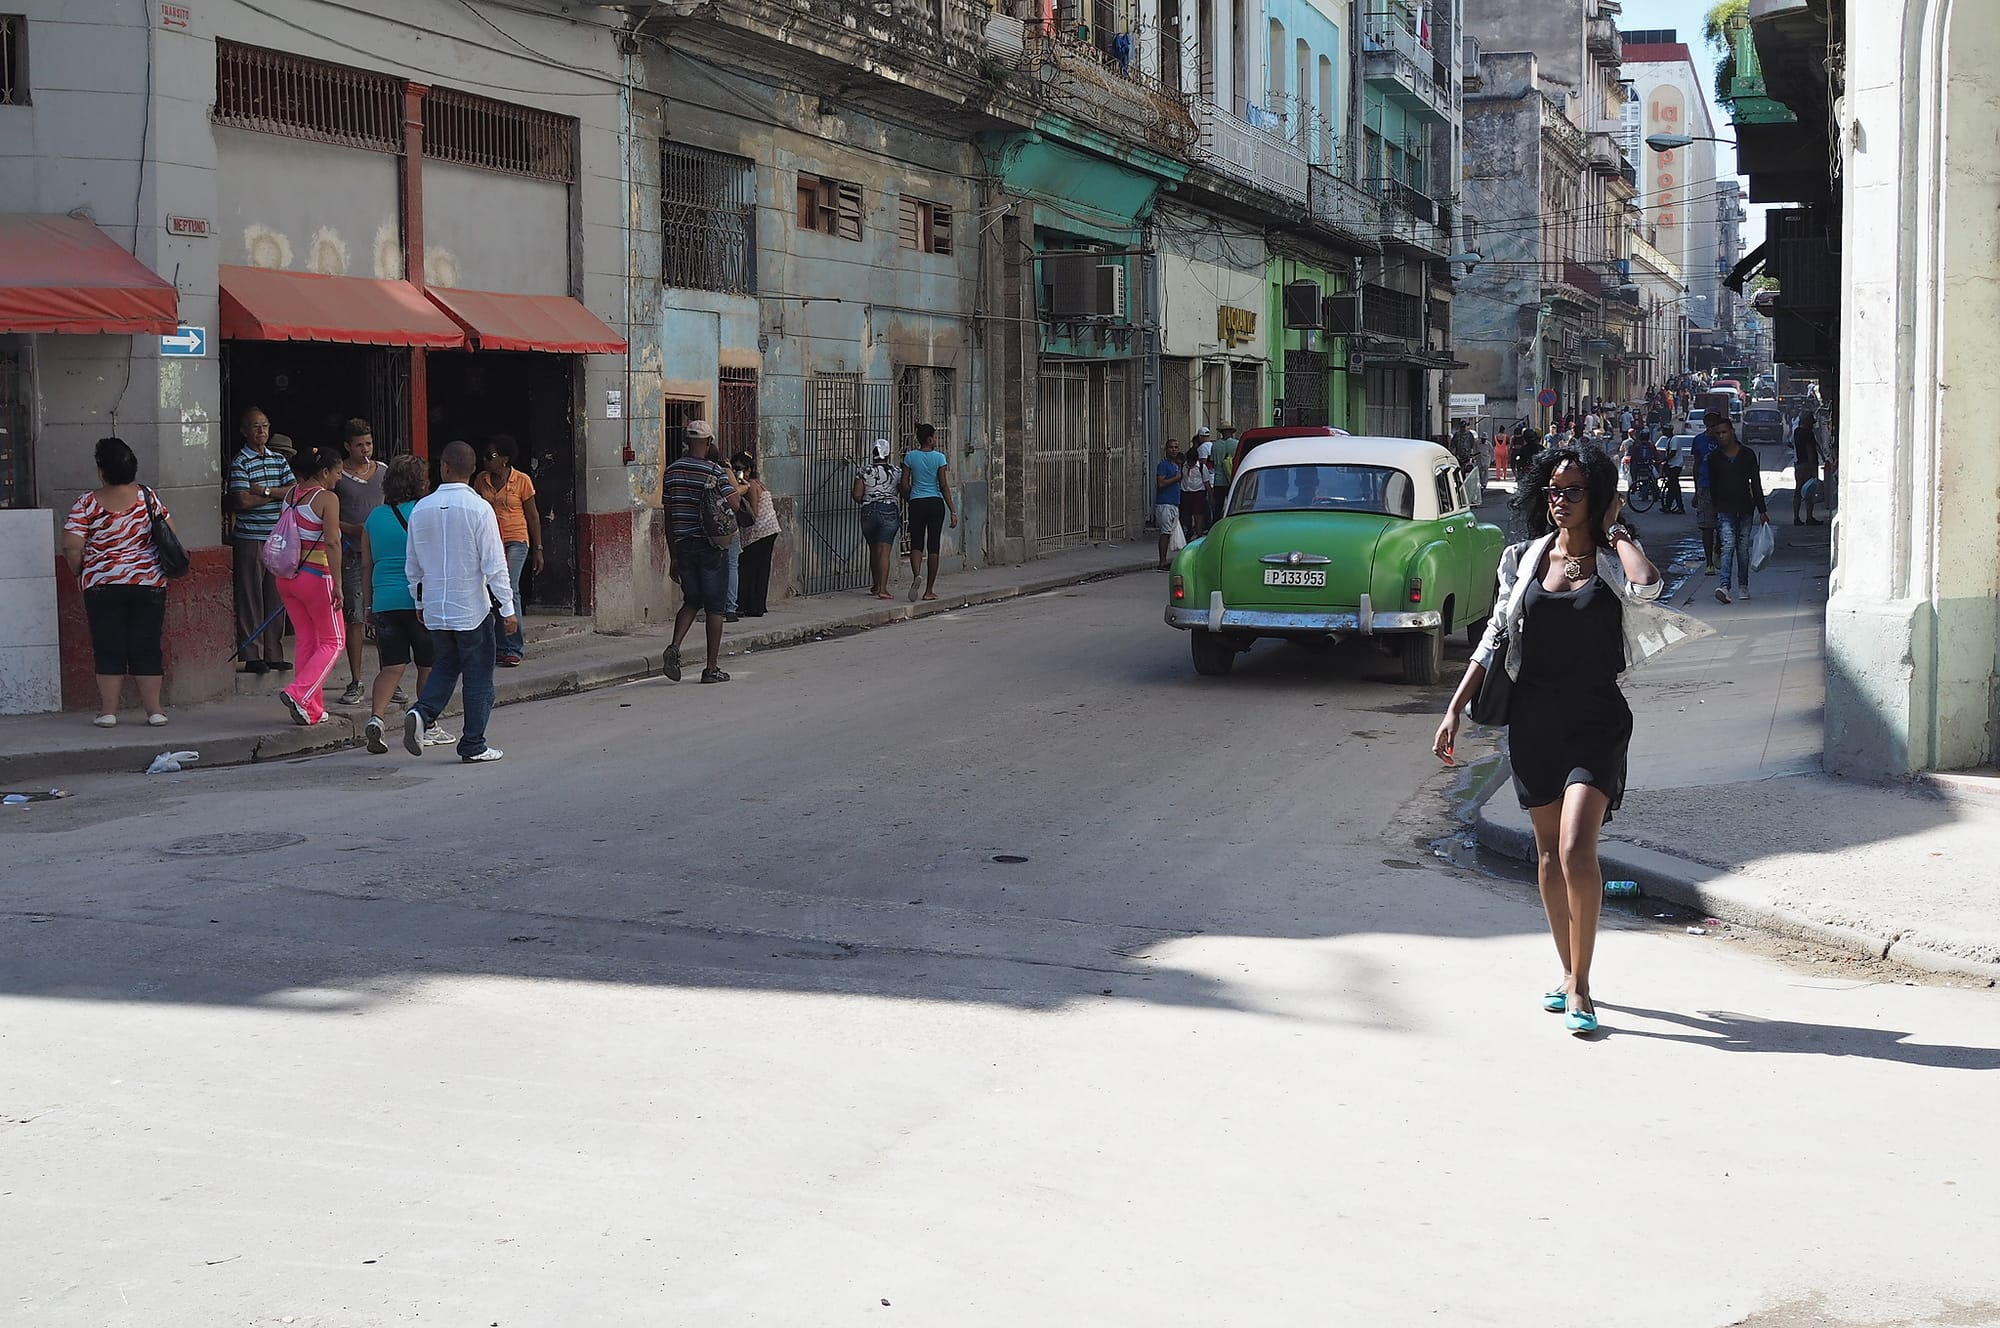 cuban woman walking by the street in old havana